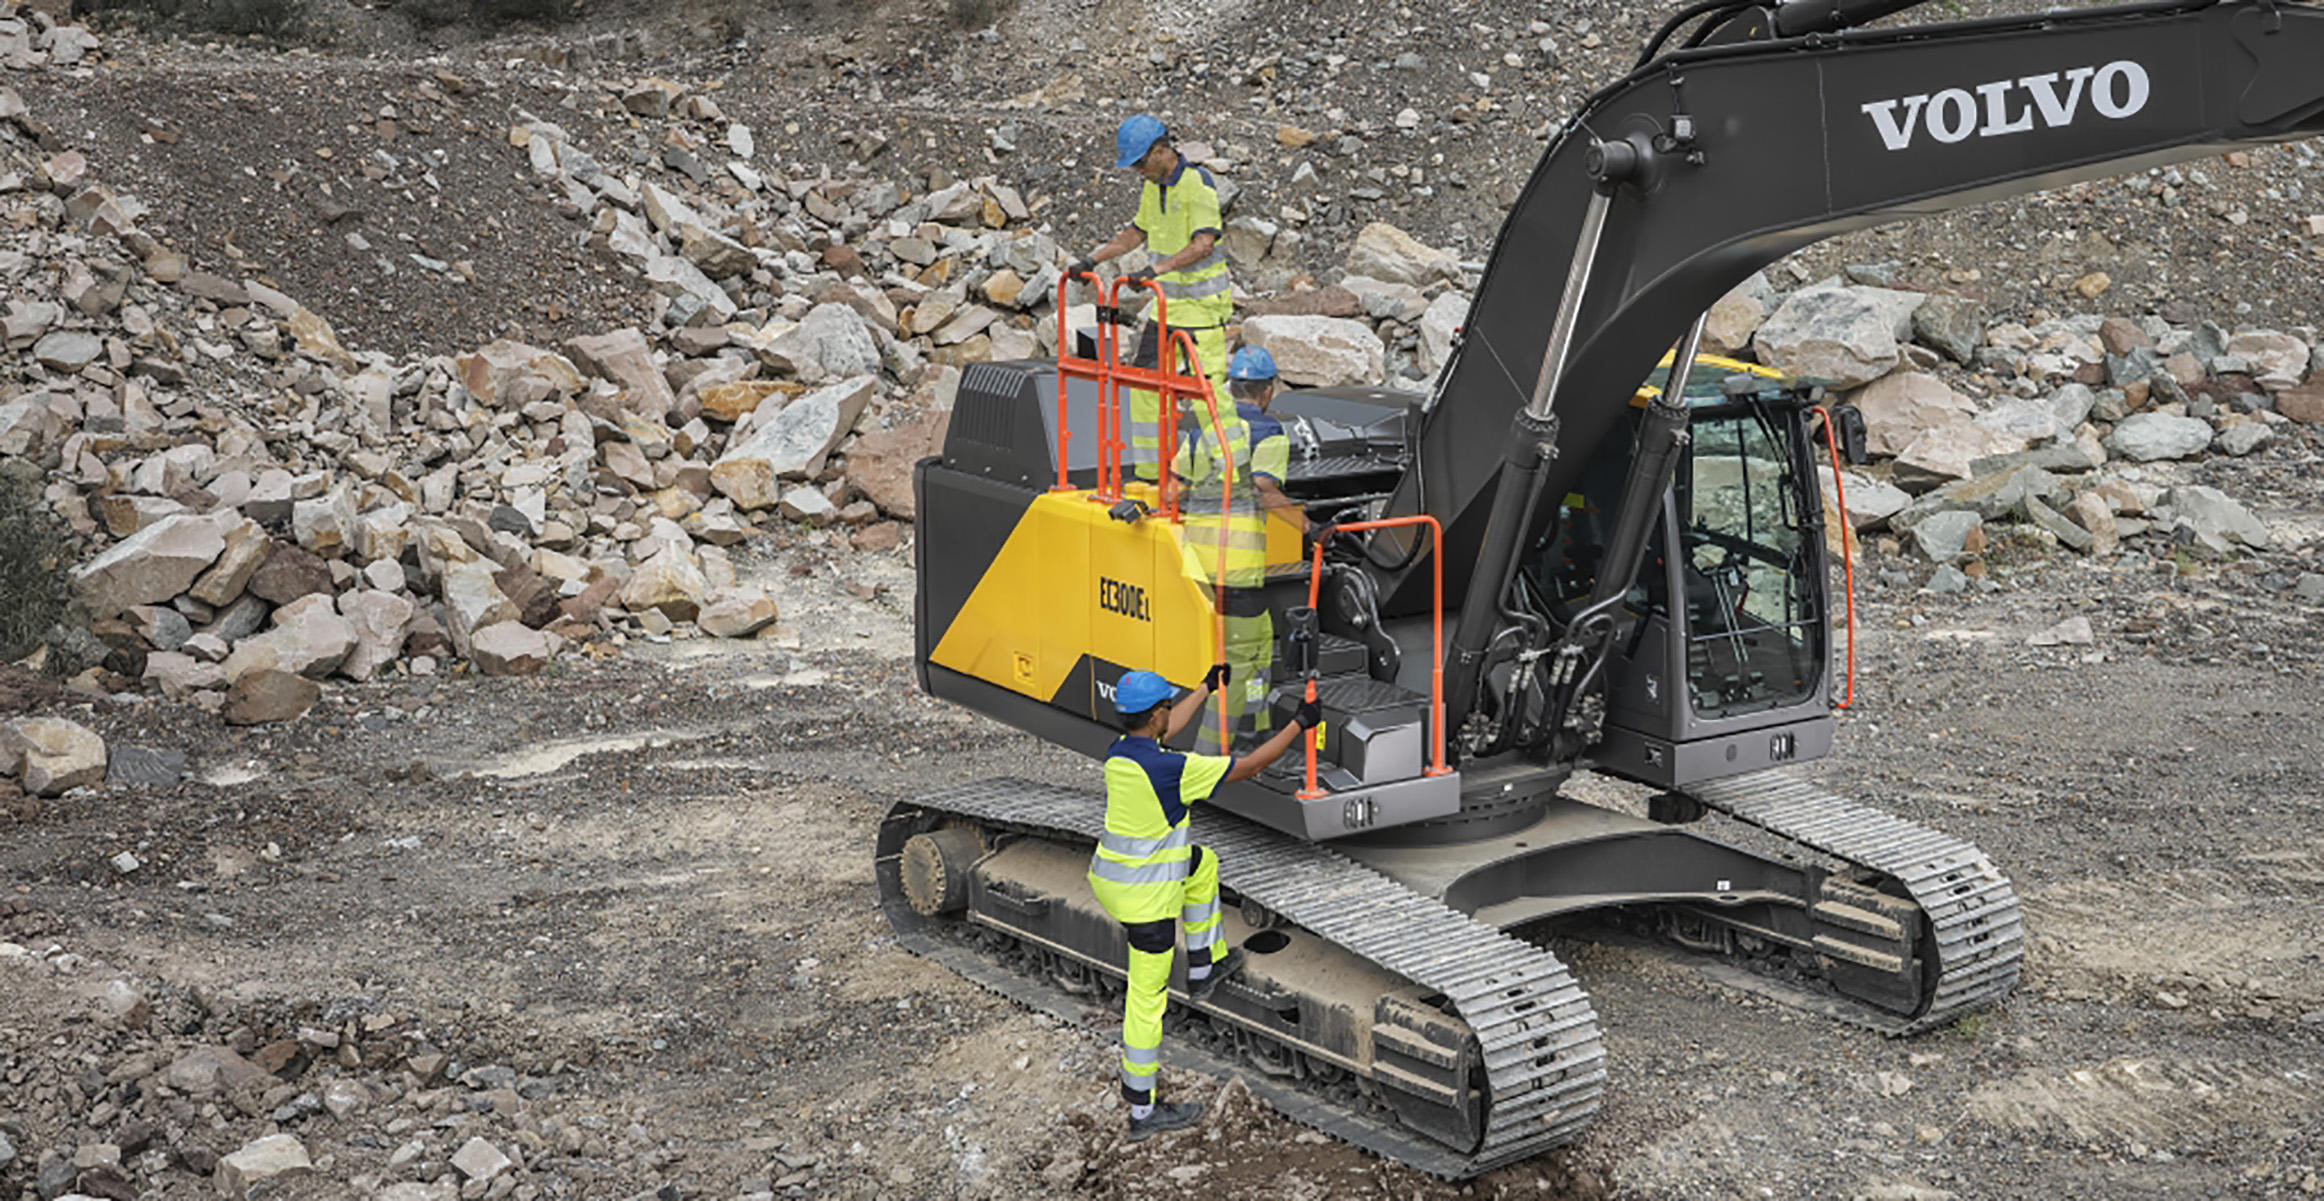 The new EC300E heavy duty excavator